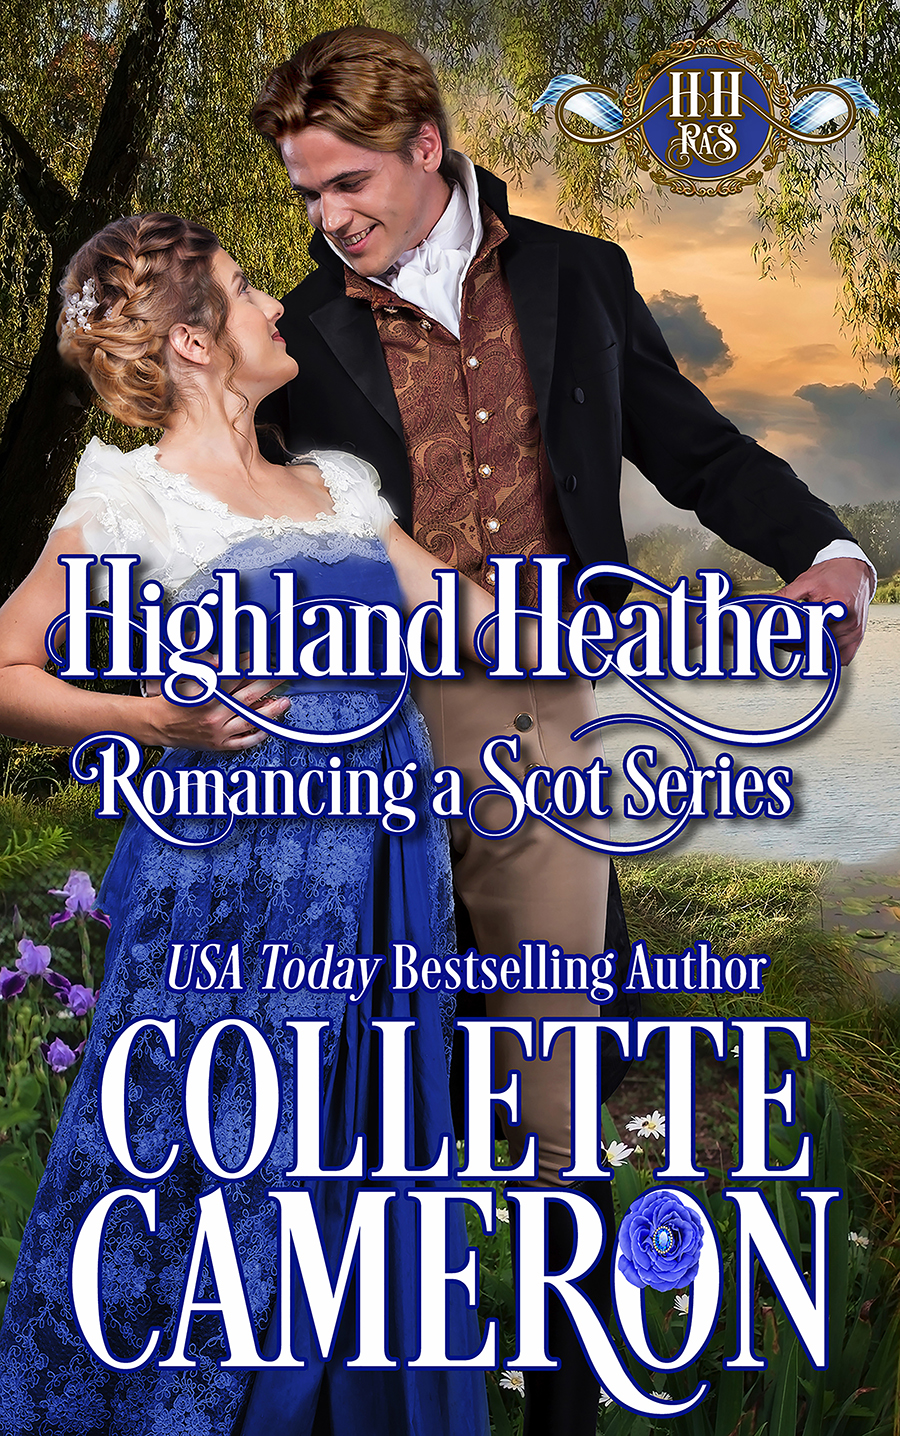 Collette's Historical Romances 5